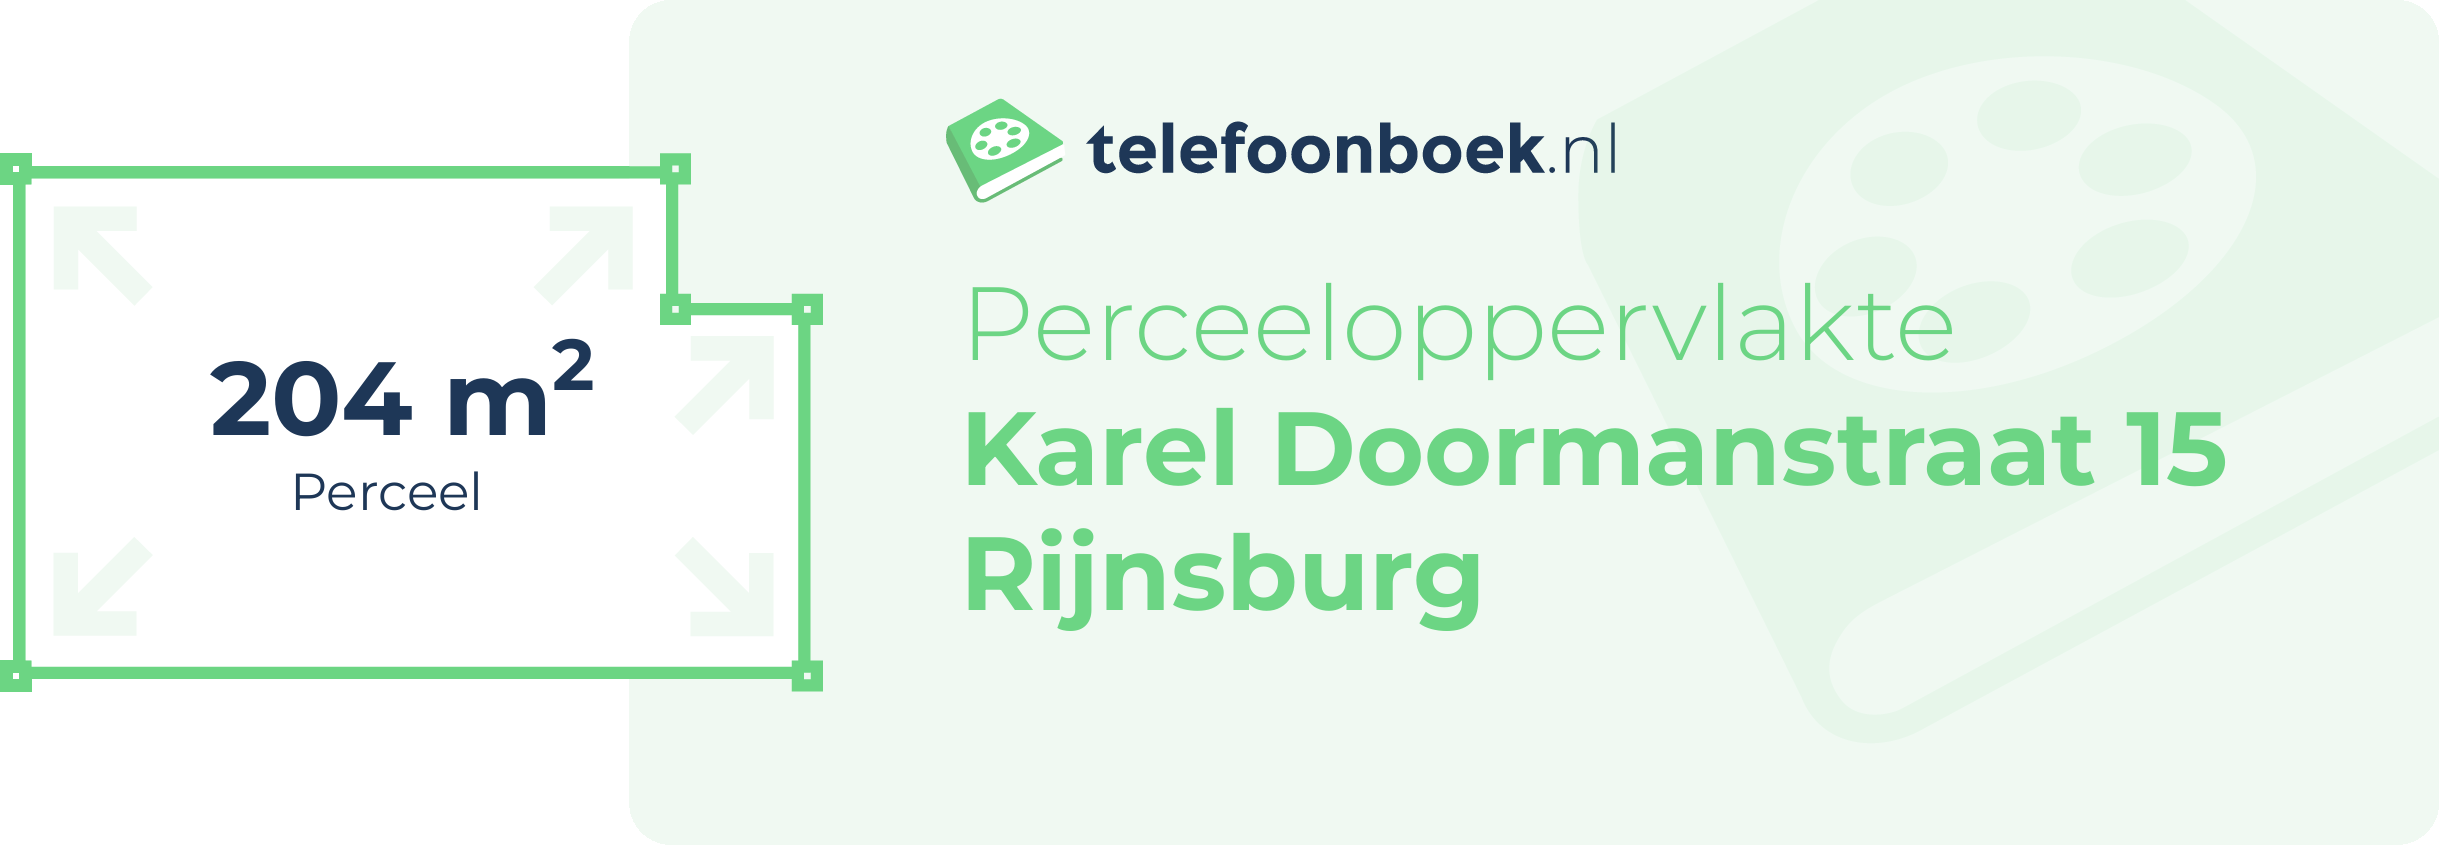 Perceeloppervlakte Karel Doormanstraat 15 Rijnsburg